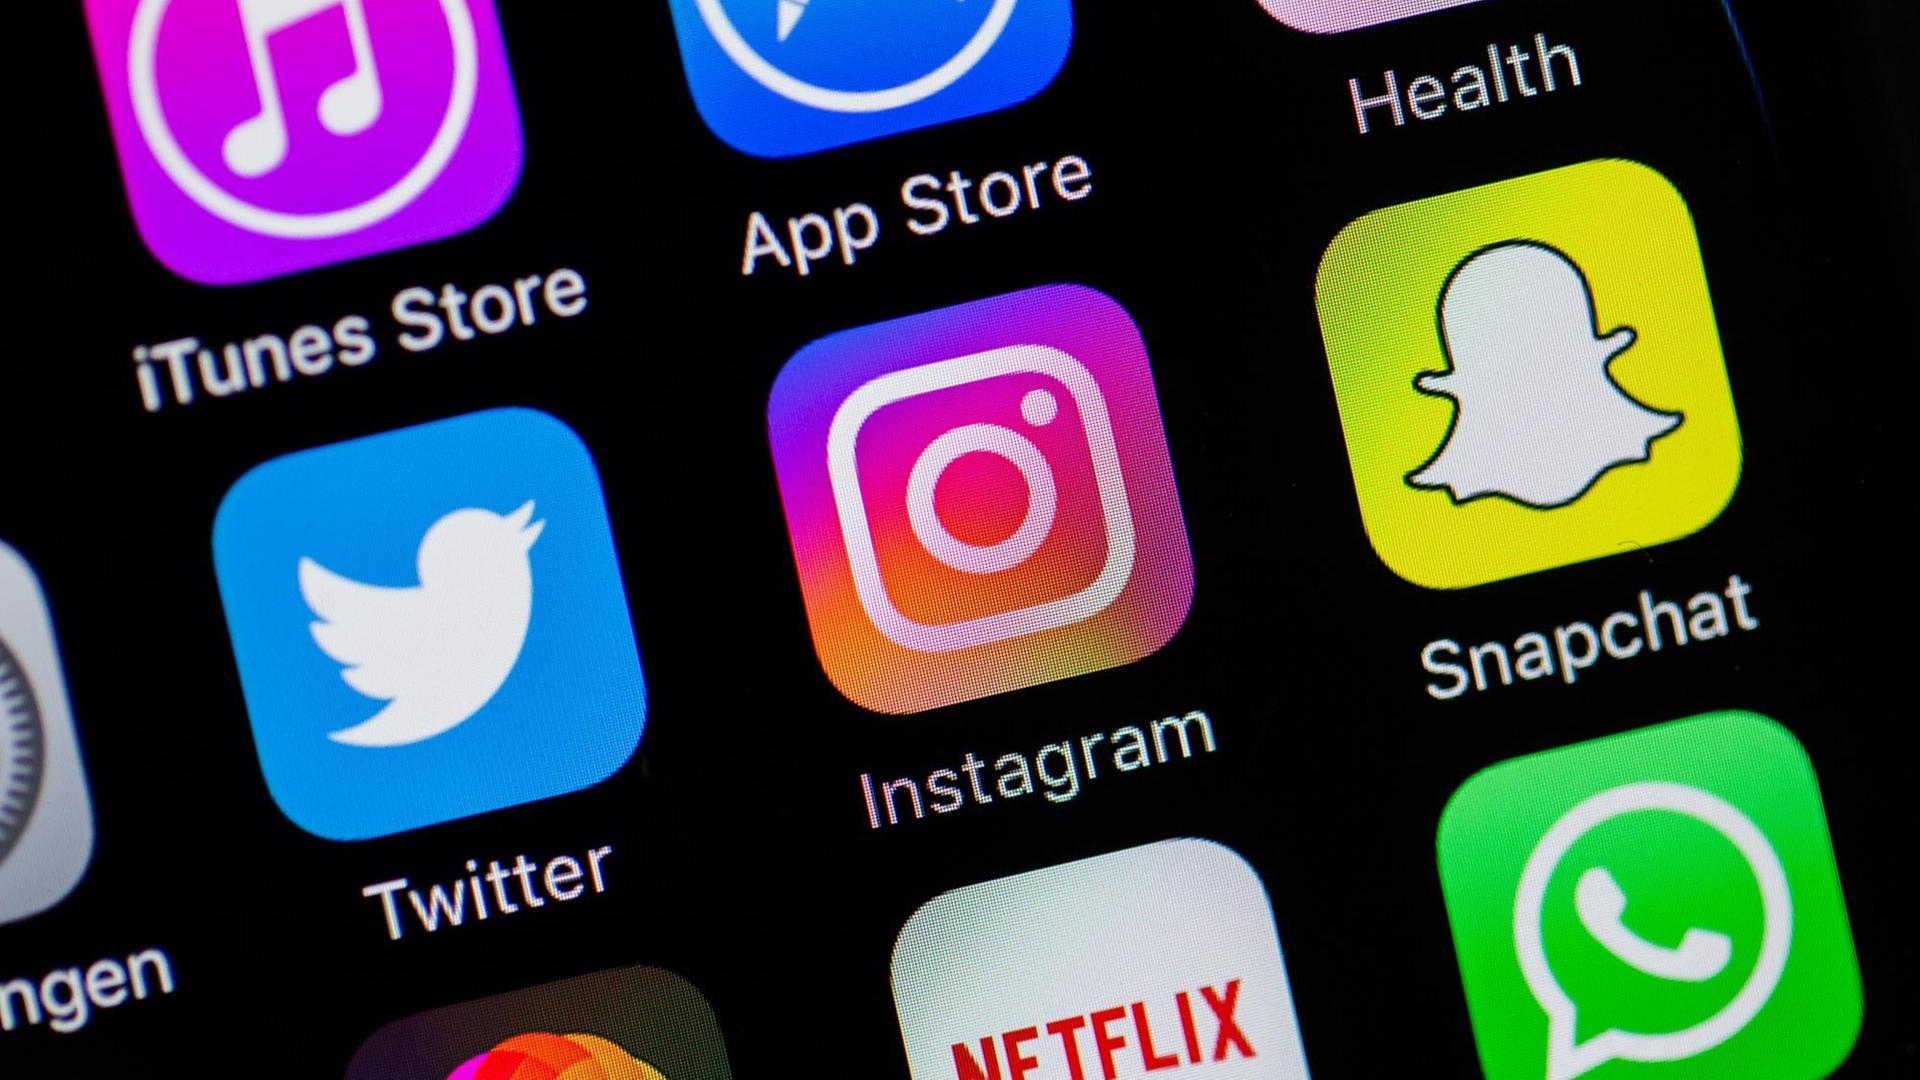 Auf einem Smartphone-Display sind die Logos von Twitter, Instagram und Snapchat zu sehen.